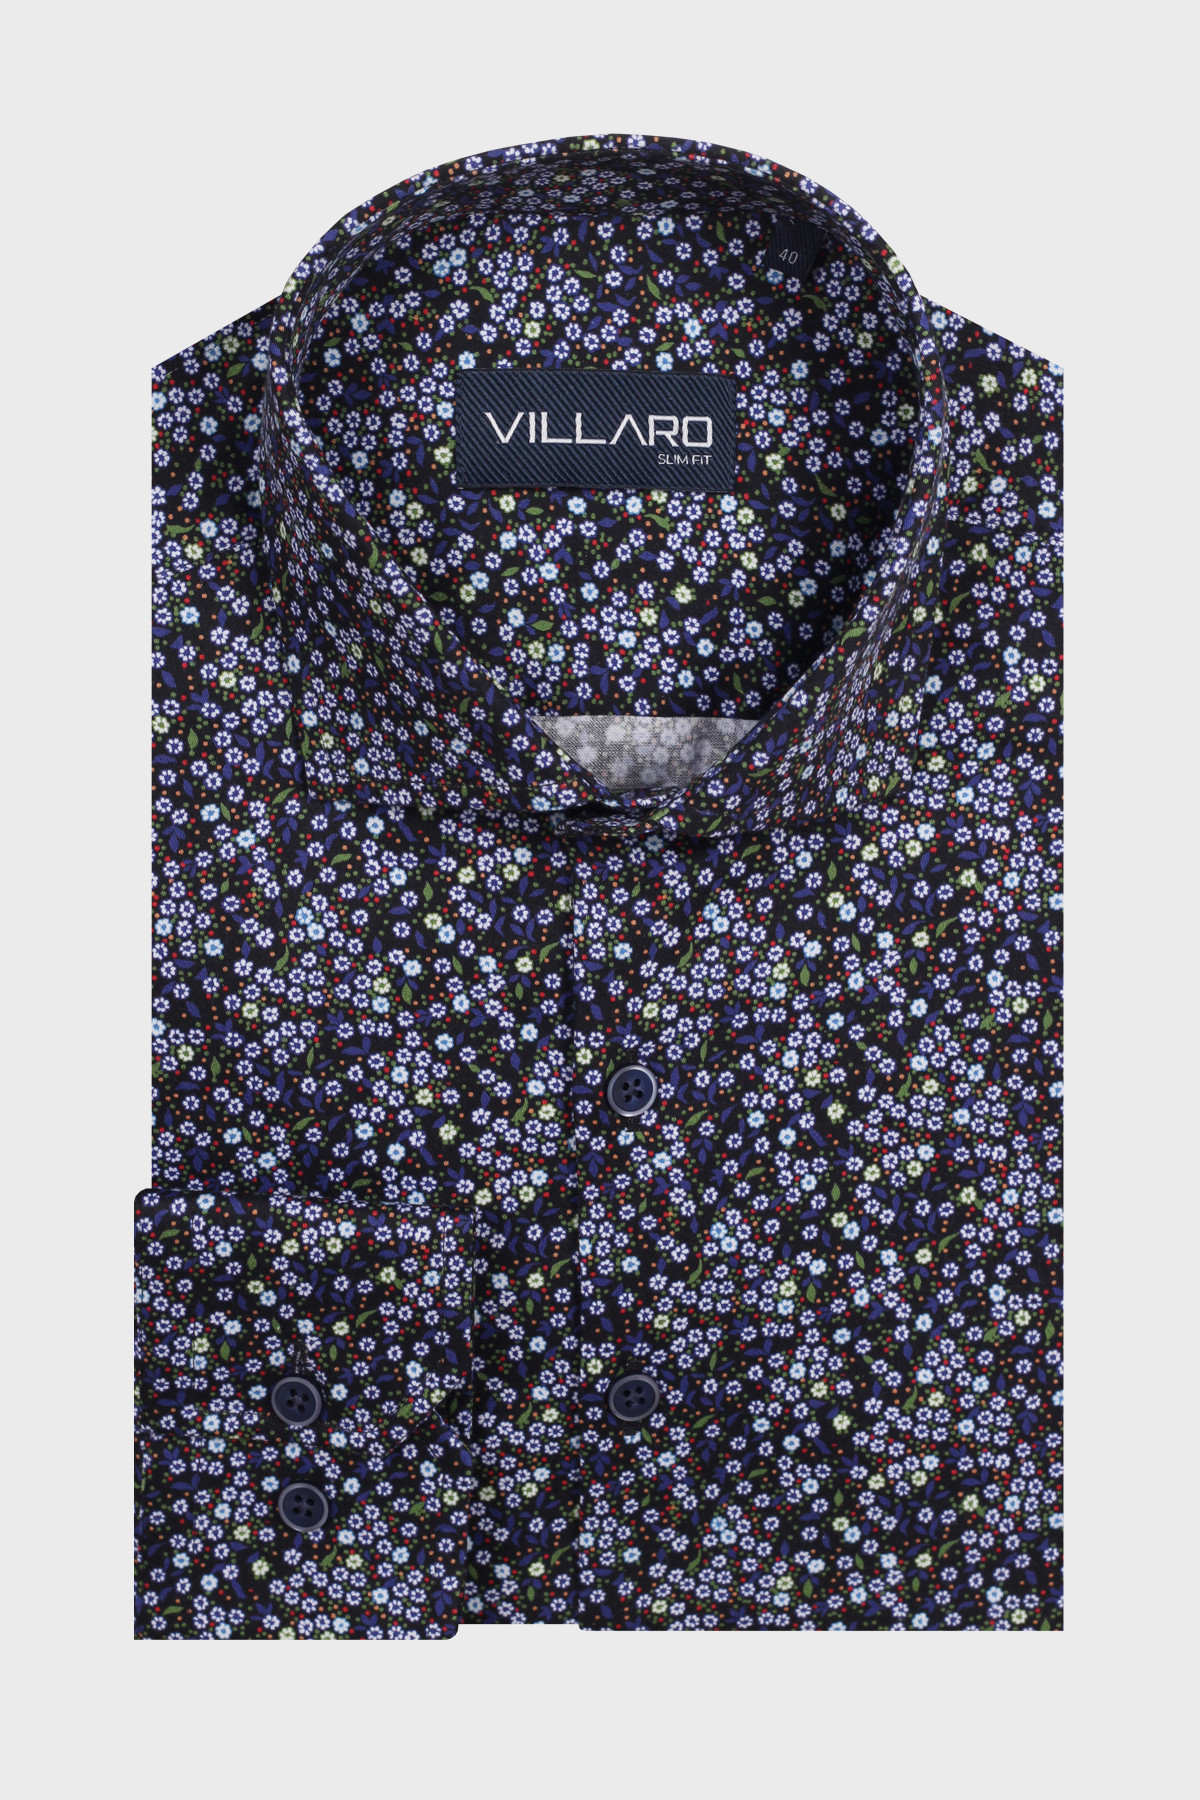 Pánská košile dlouhý rukáv VILLARO by MMER H004 Regular Fit vzorovaná prodloužená Velikost: 47